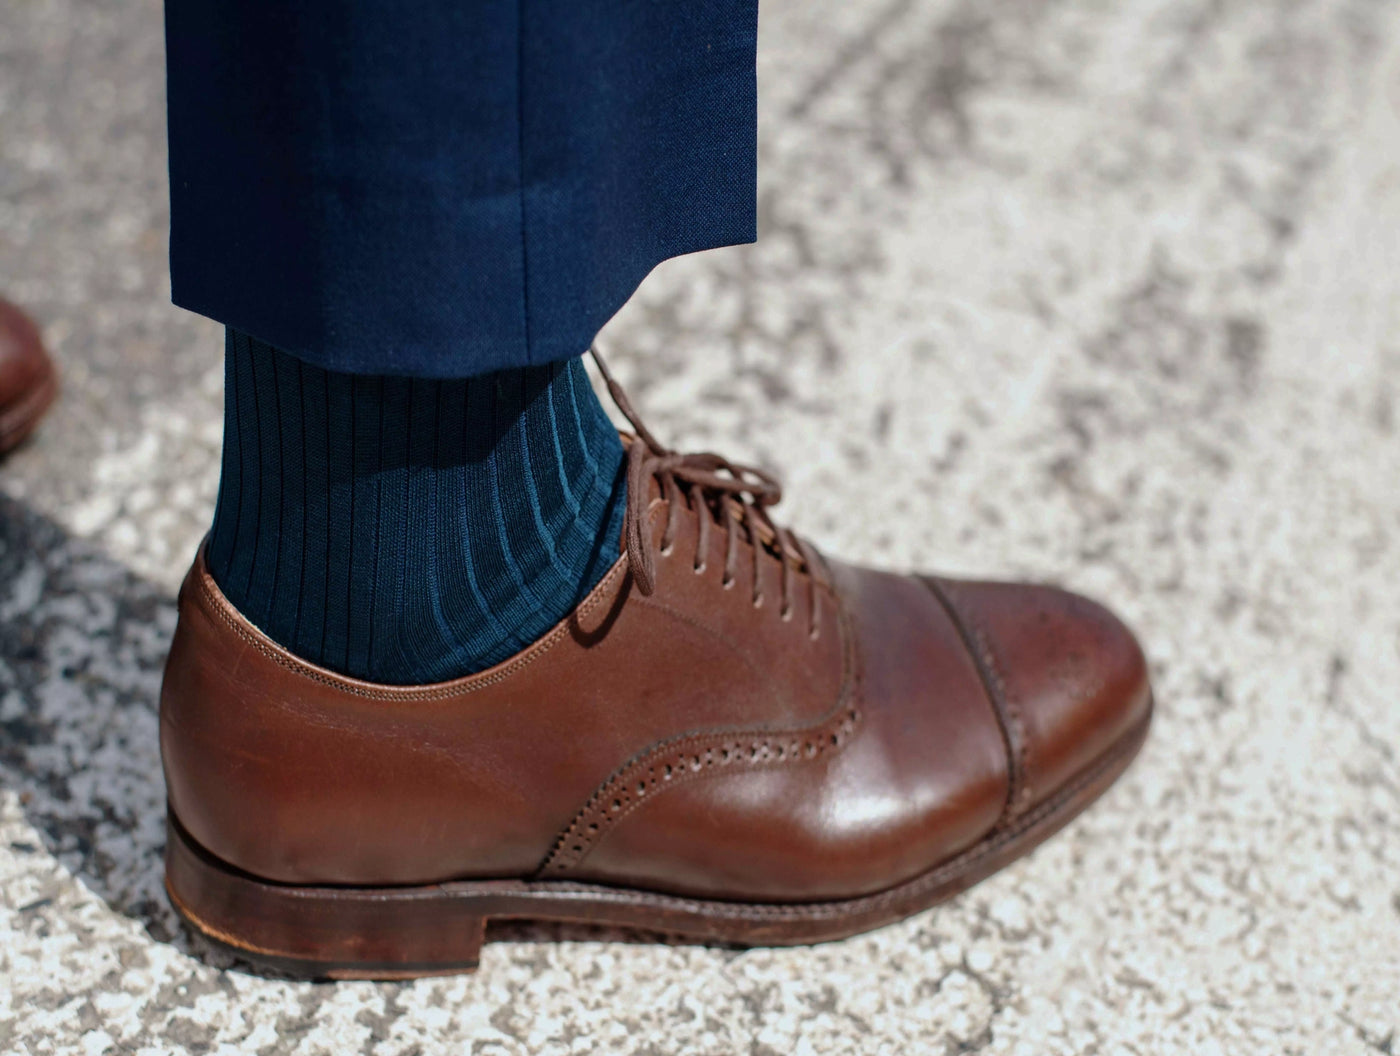 Pétrone chaussettes côtelées mi-mollet en fil d'Ecosse italien bleu acier hommes#couleur_bleu-acier